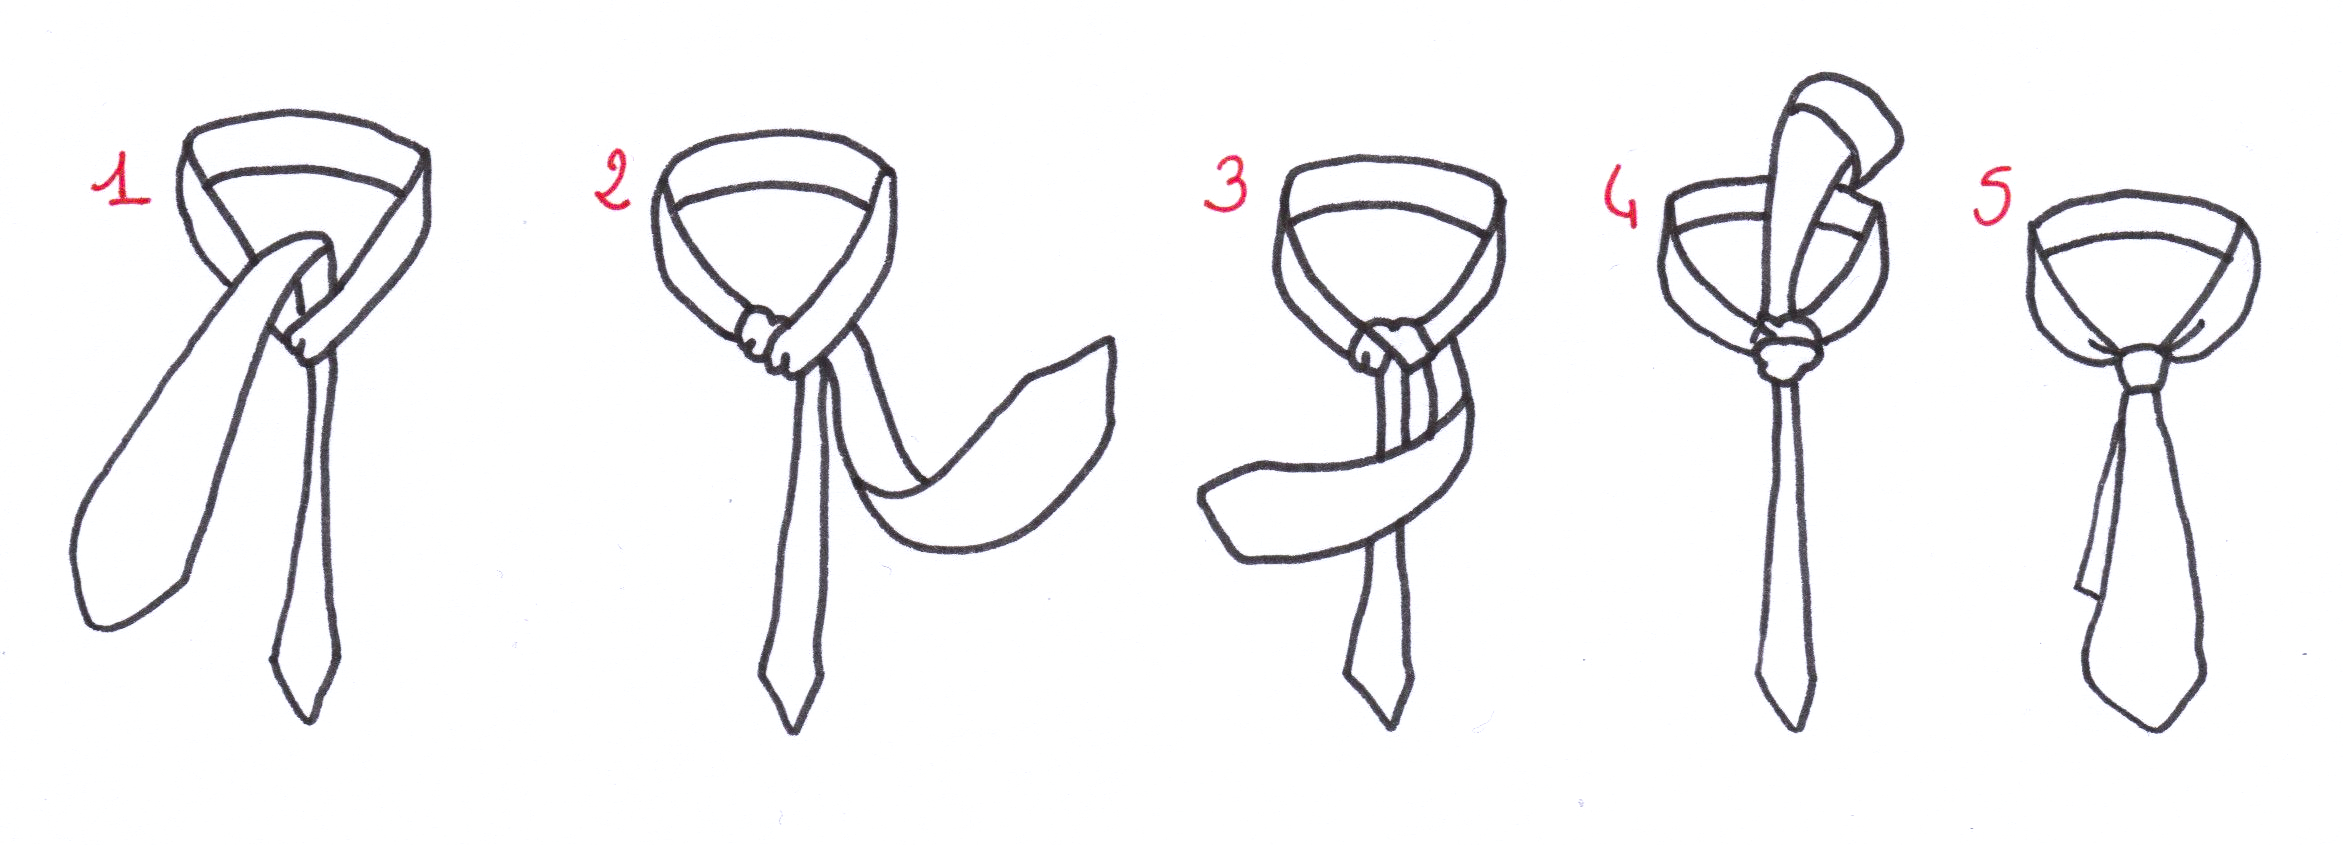 comment faire 1 noeud de cravate